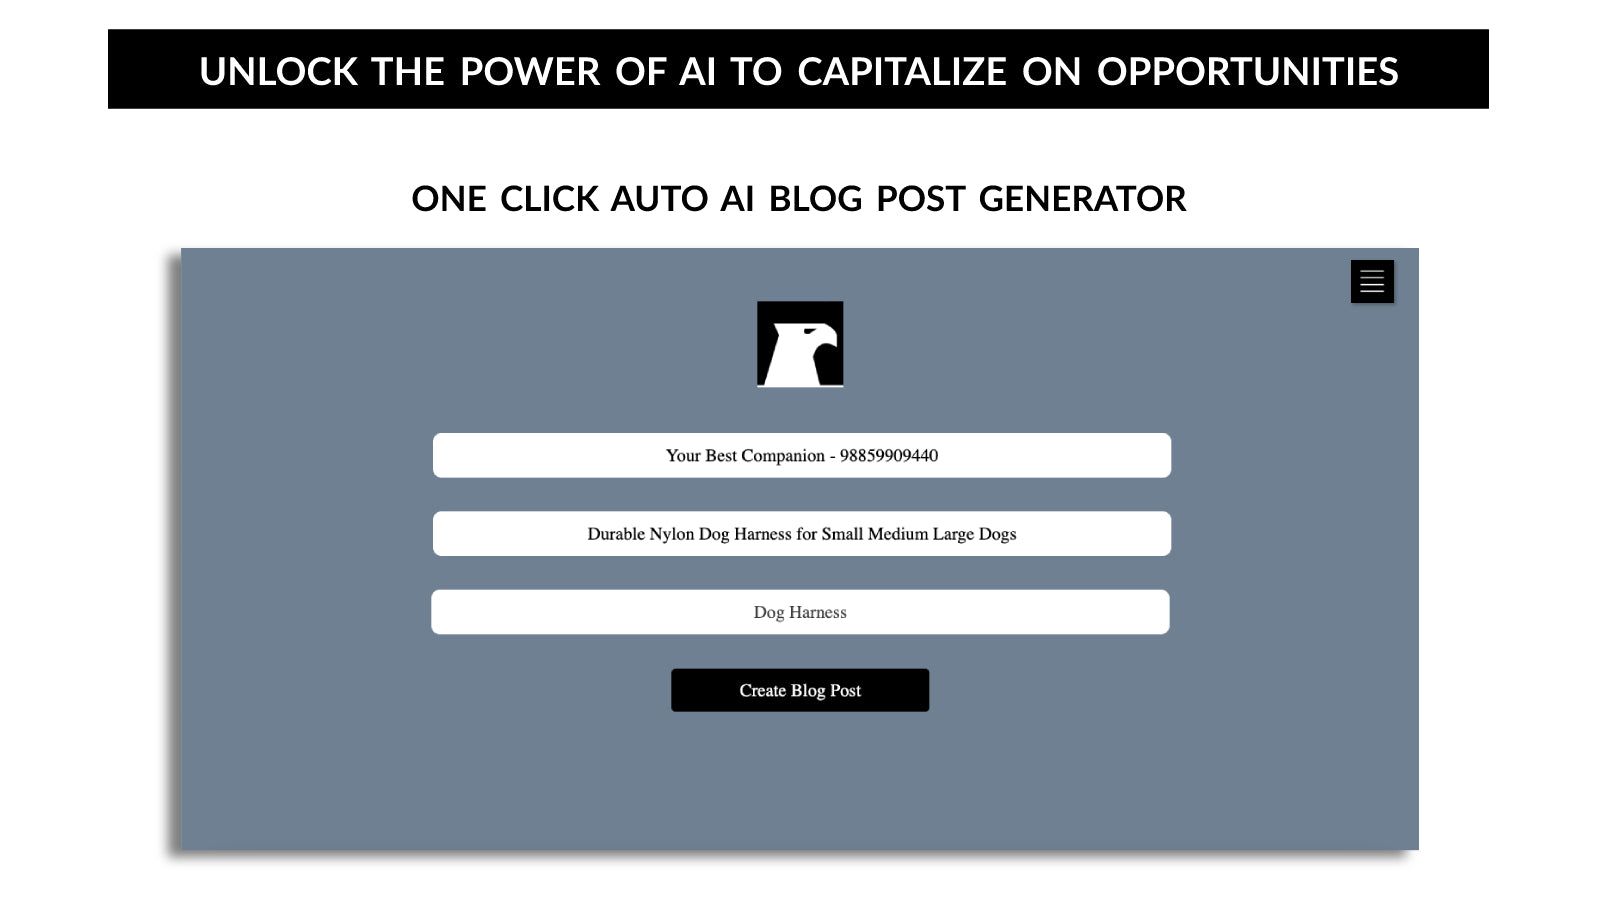 One click auto ai blog post generator